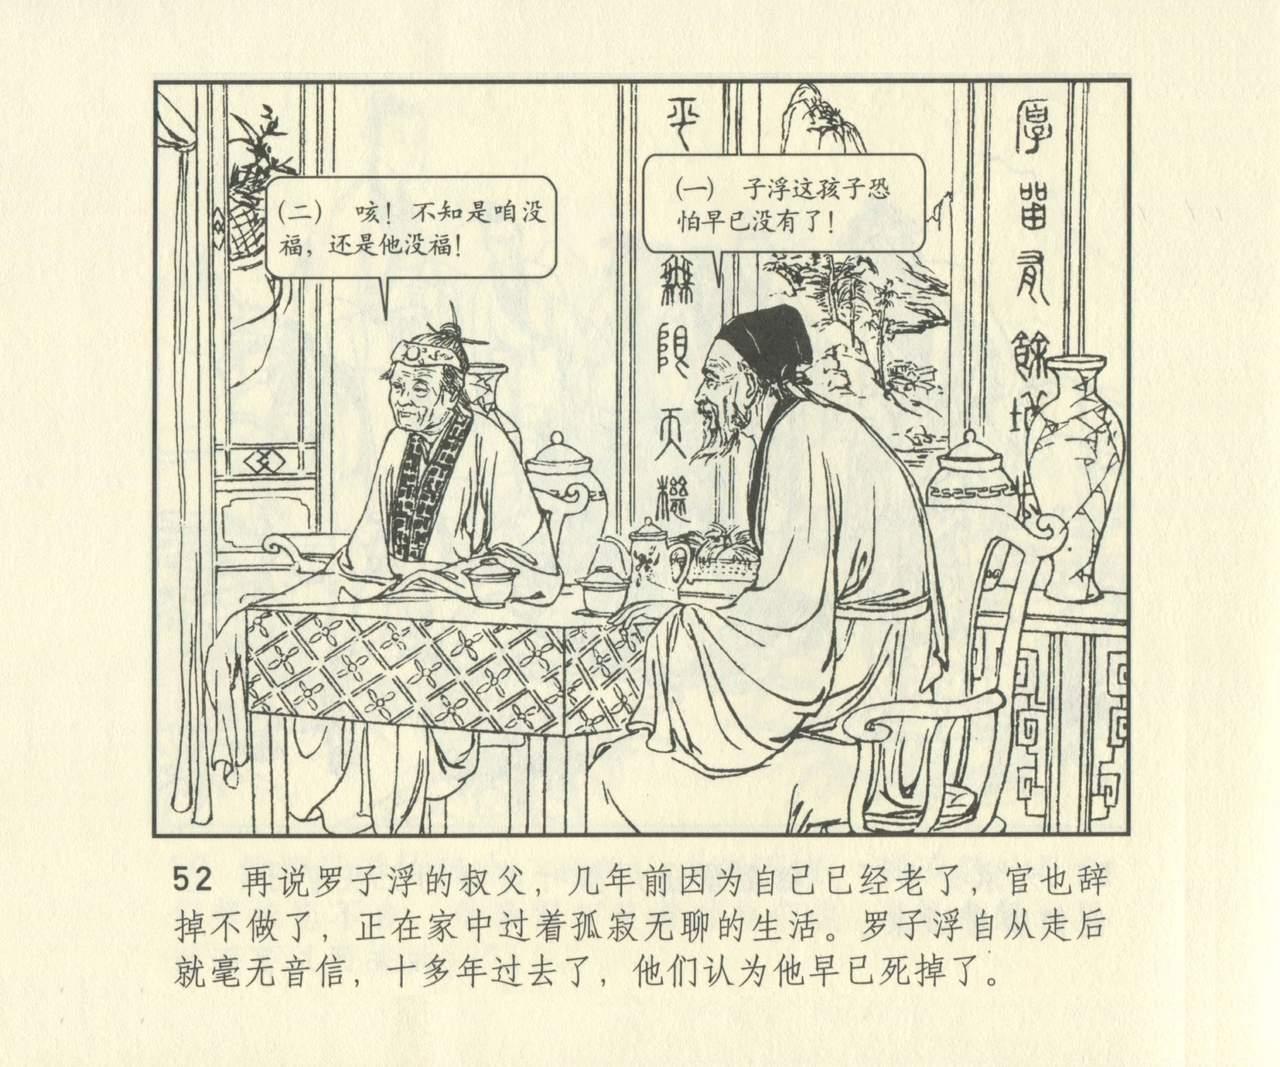 聊斋志异 张玮等绘 天津人民美术出版社 卷二十一 ~ 三十 668